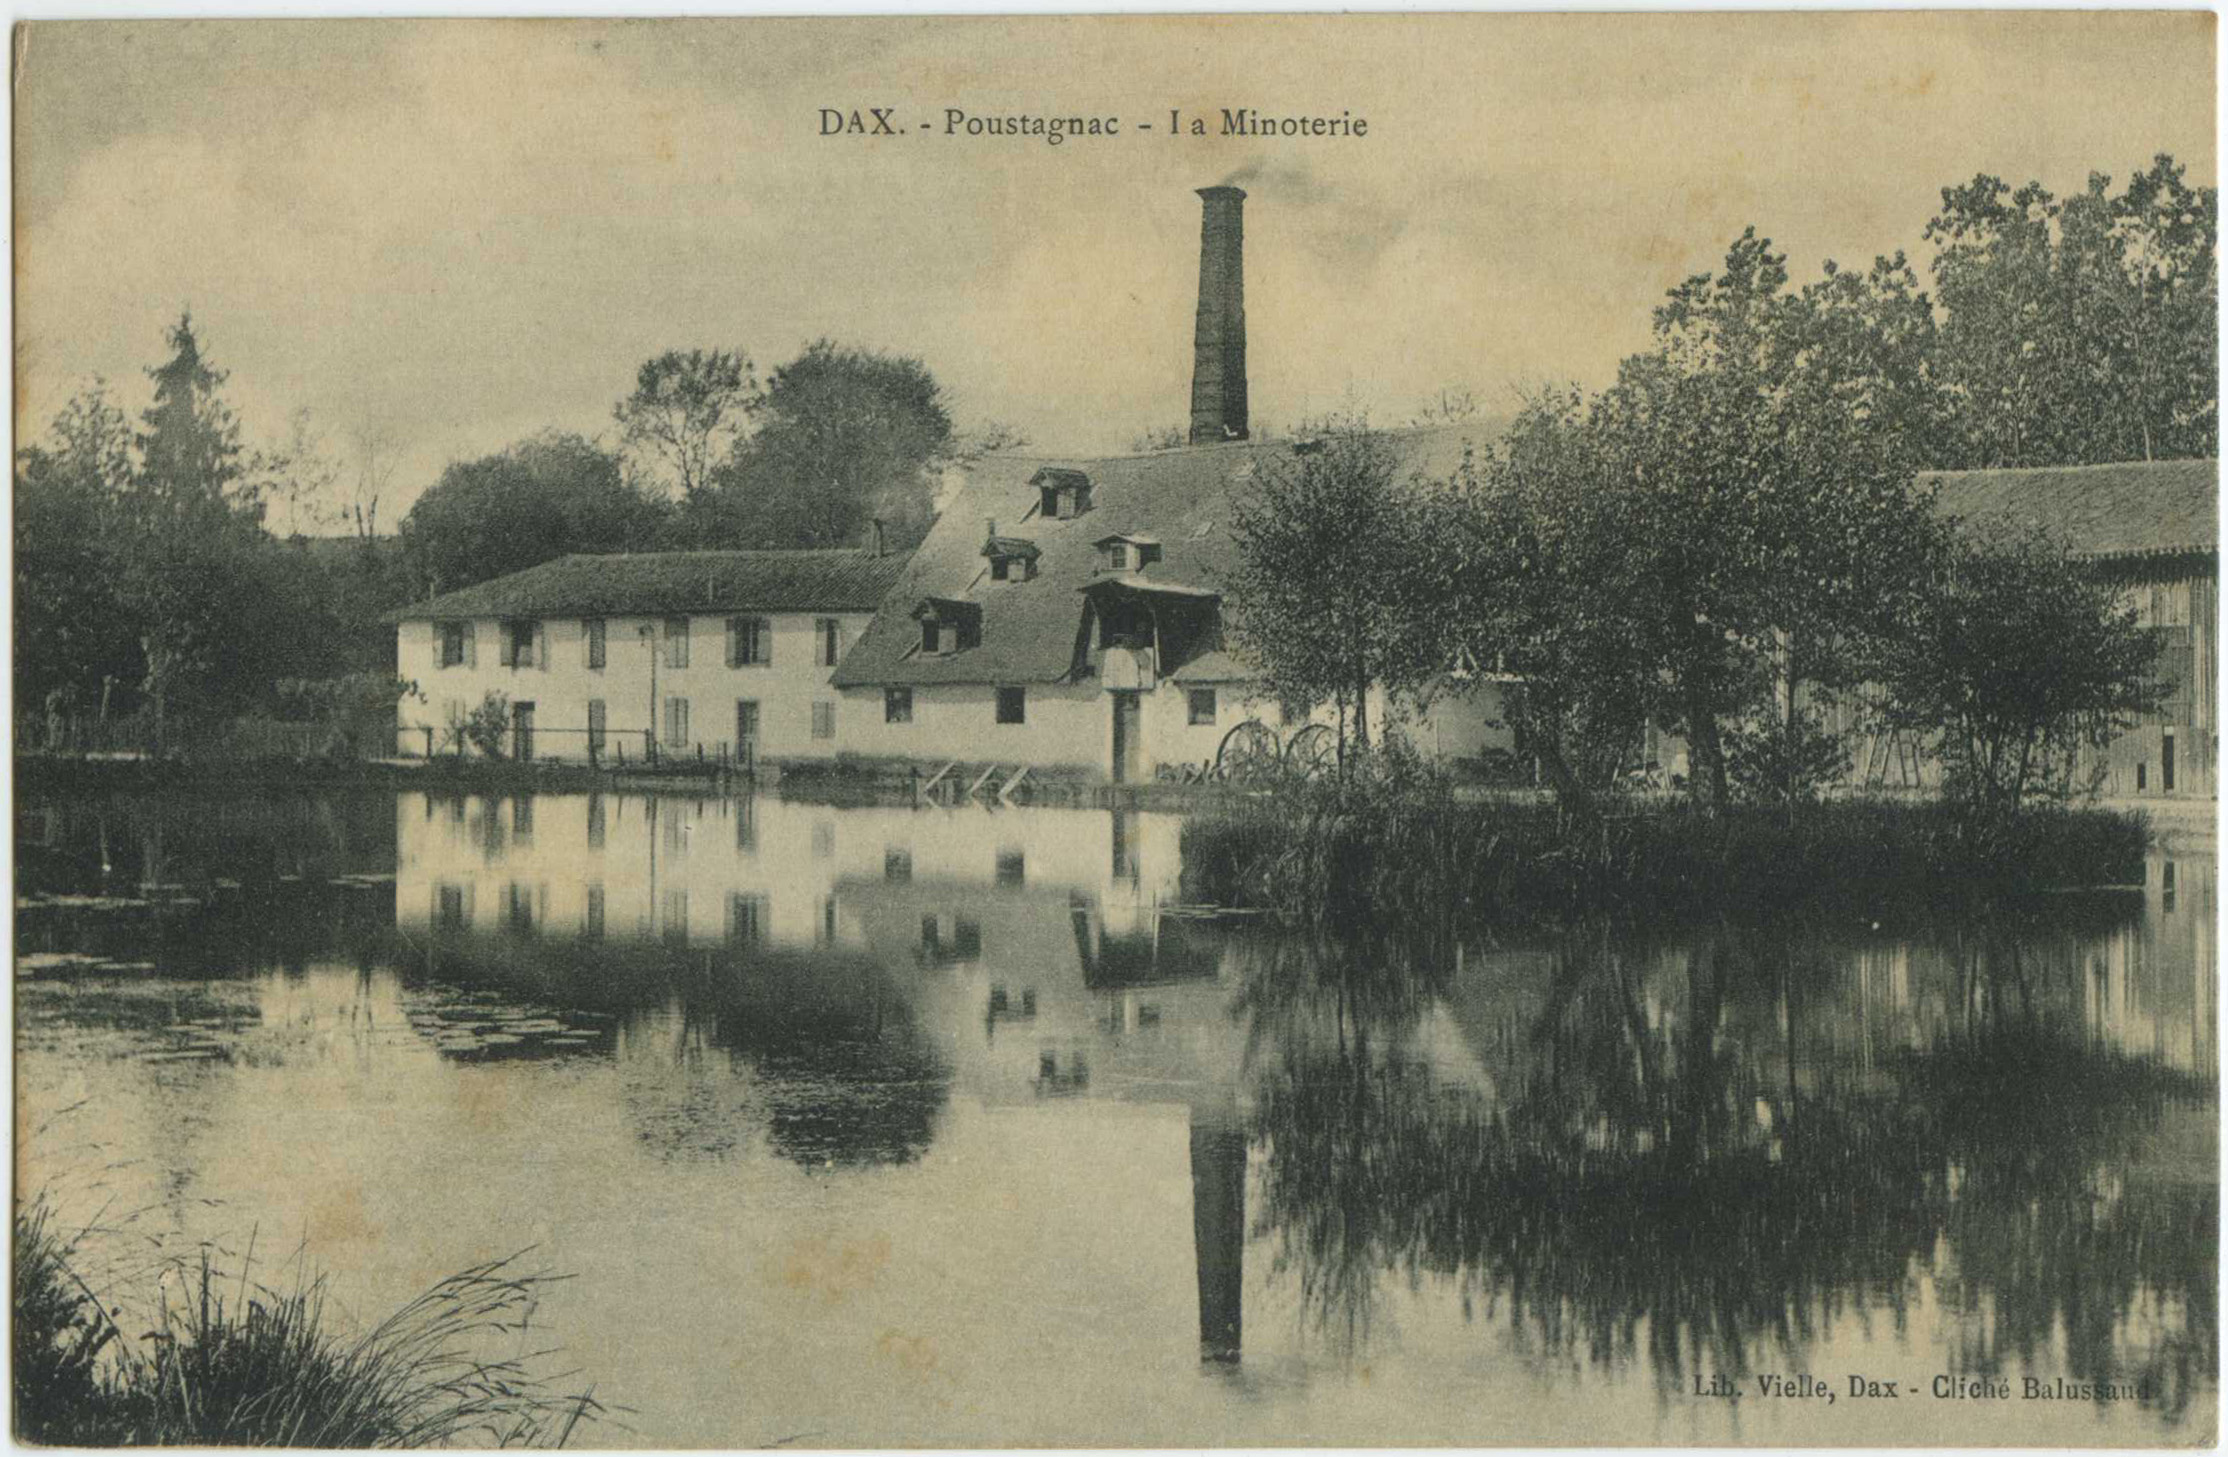 Saint-Paul-lès-Dax - Poustagnac - La Minoterie